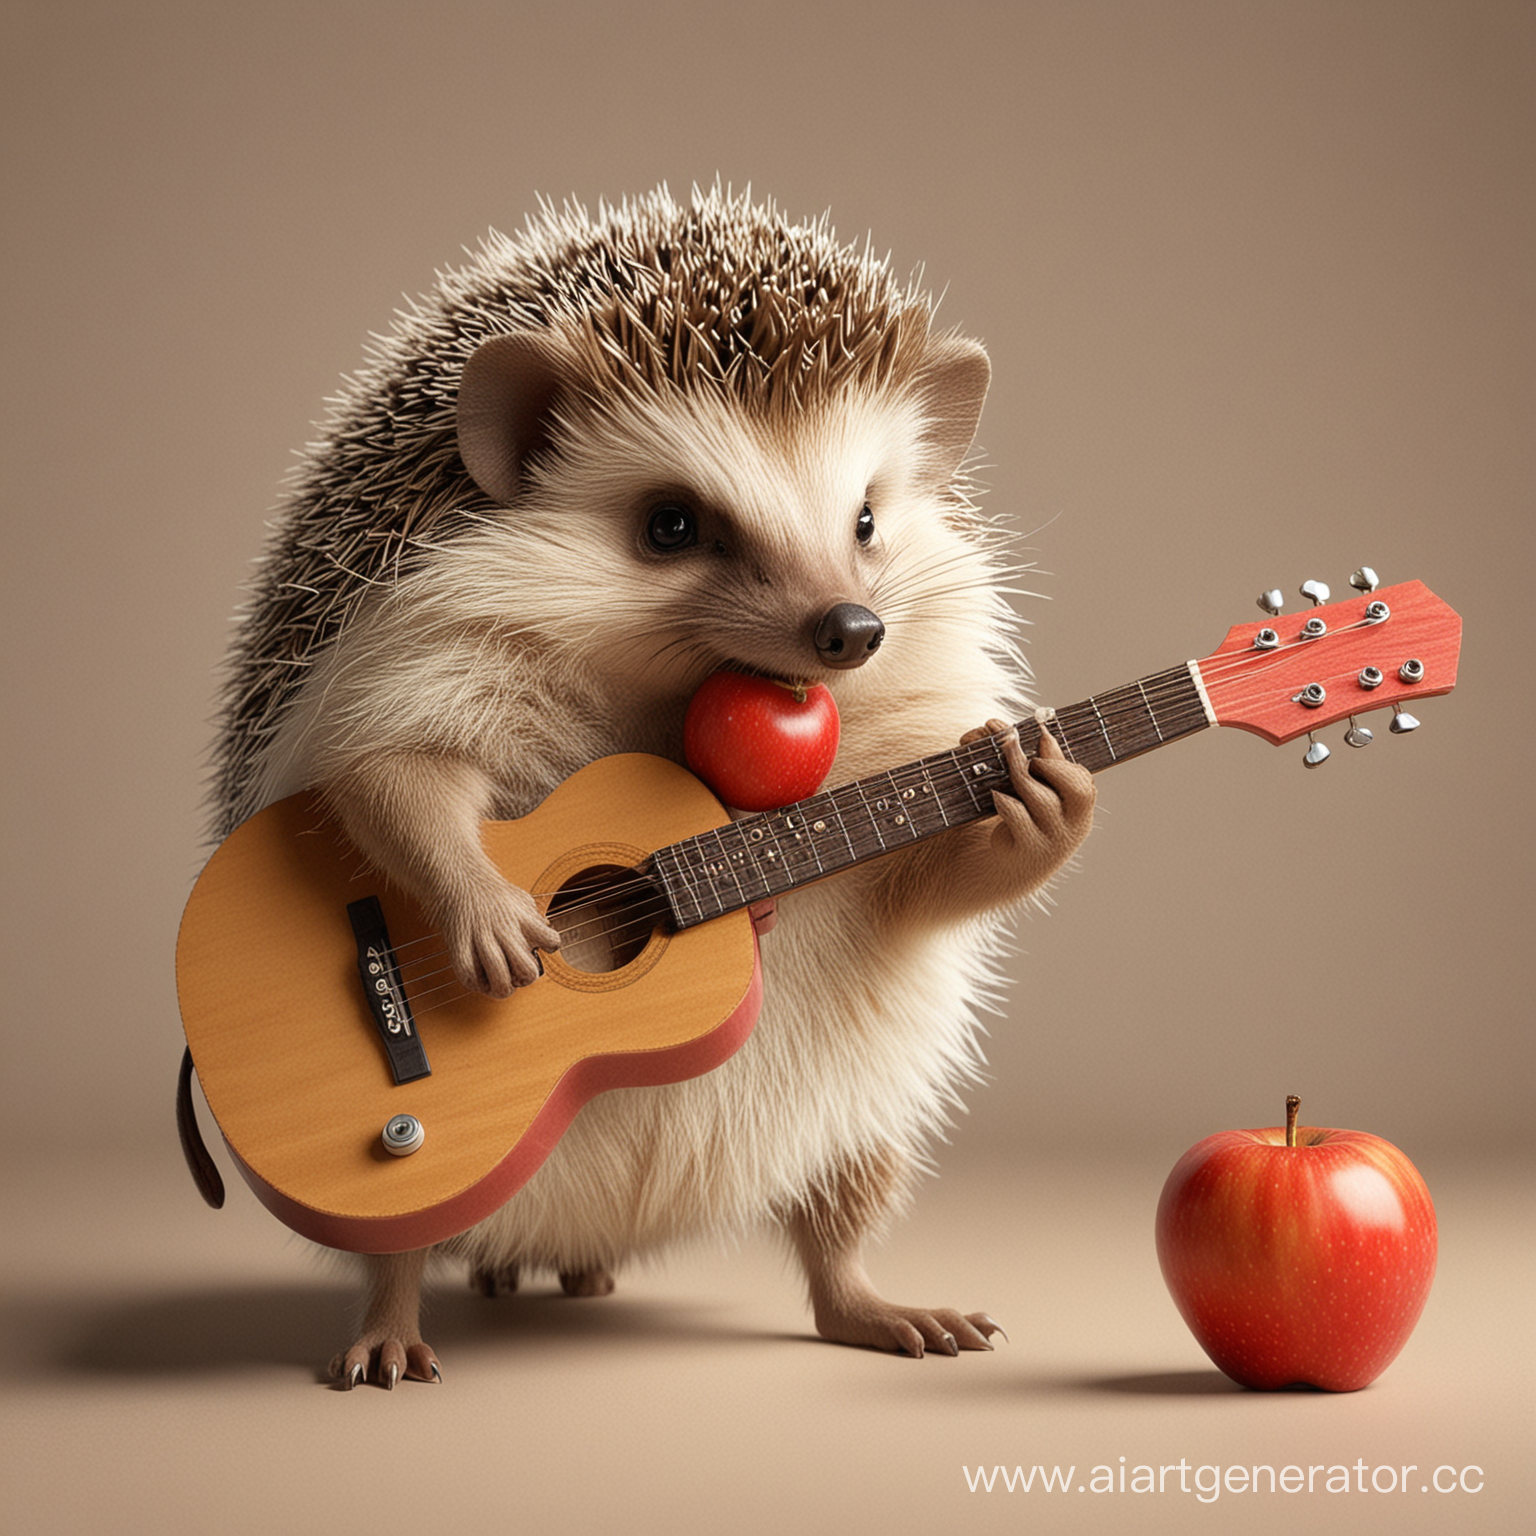 Ёж с яблоком во рту играет на гитаре